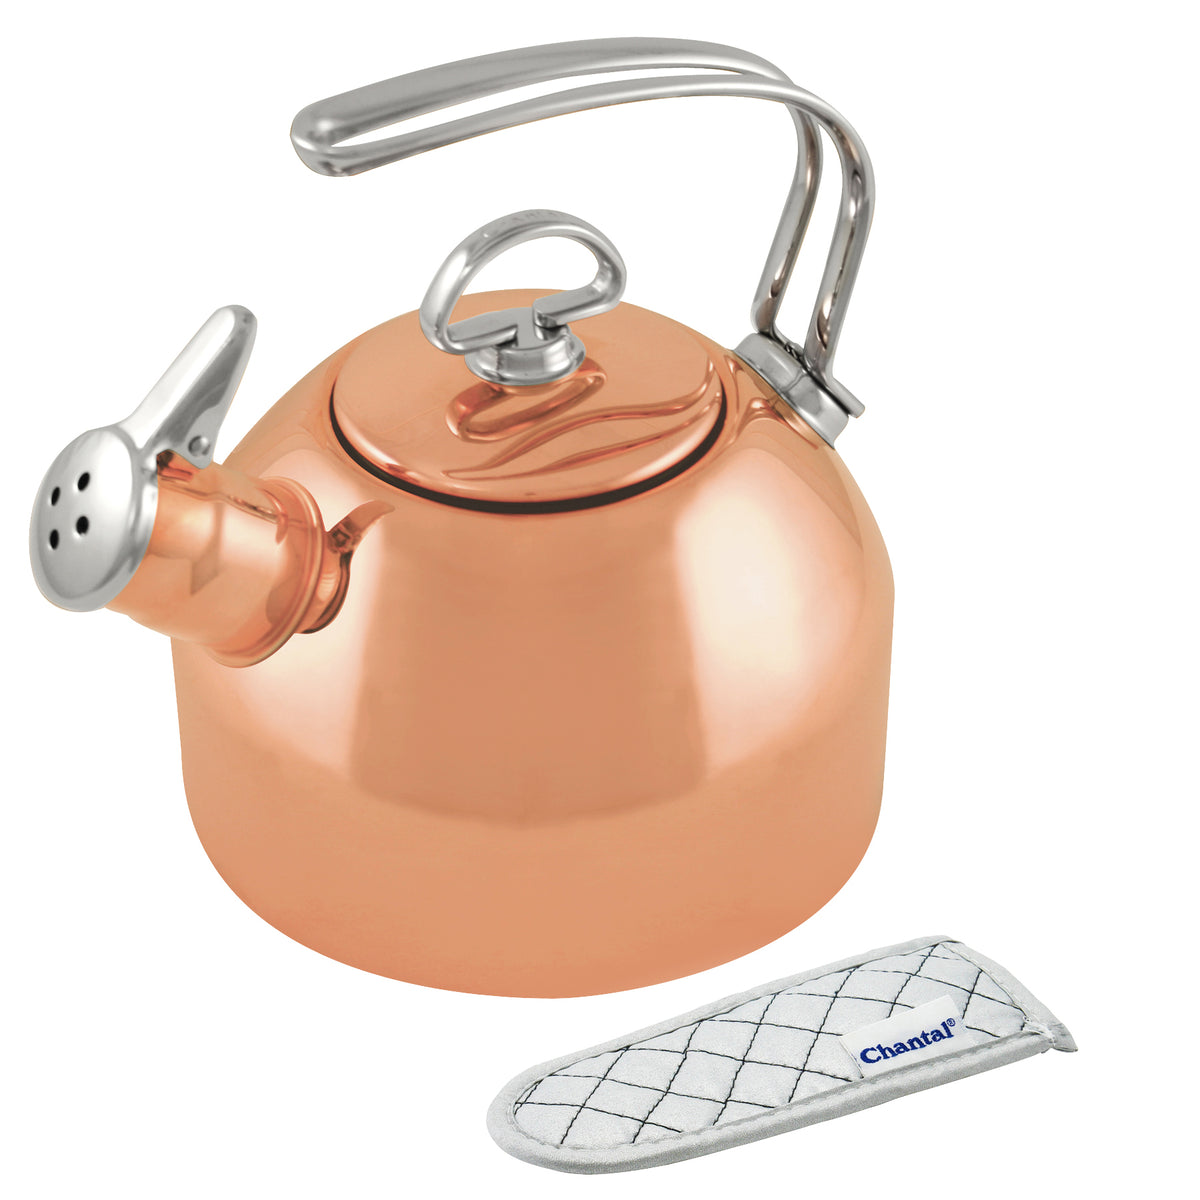 Copper Classic Teakettle (1.8 Qt.) – Chantal